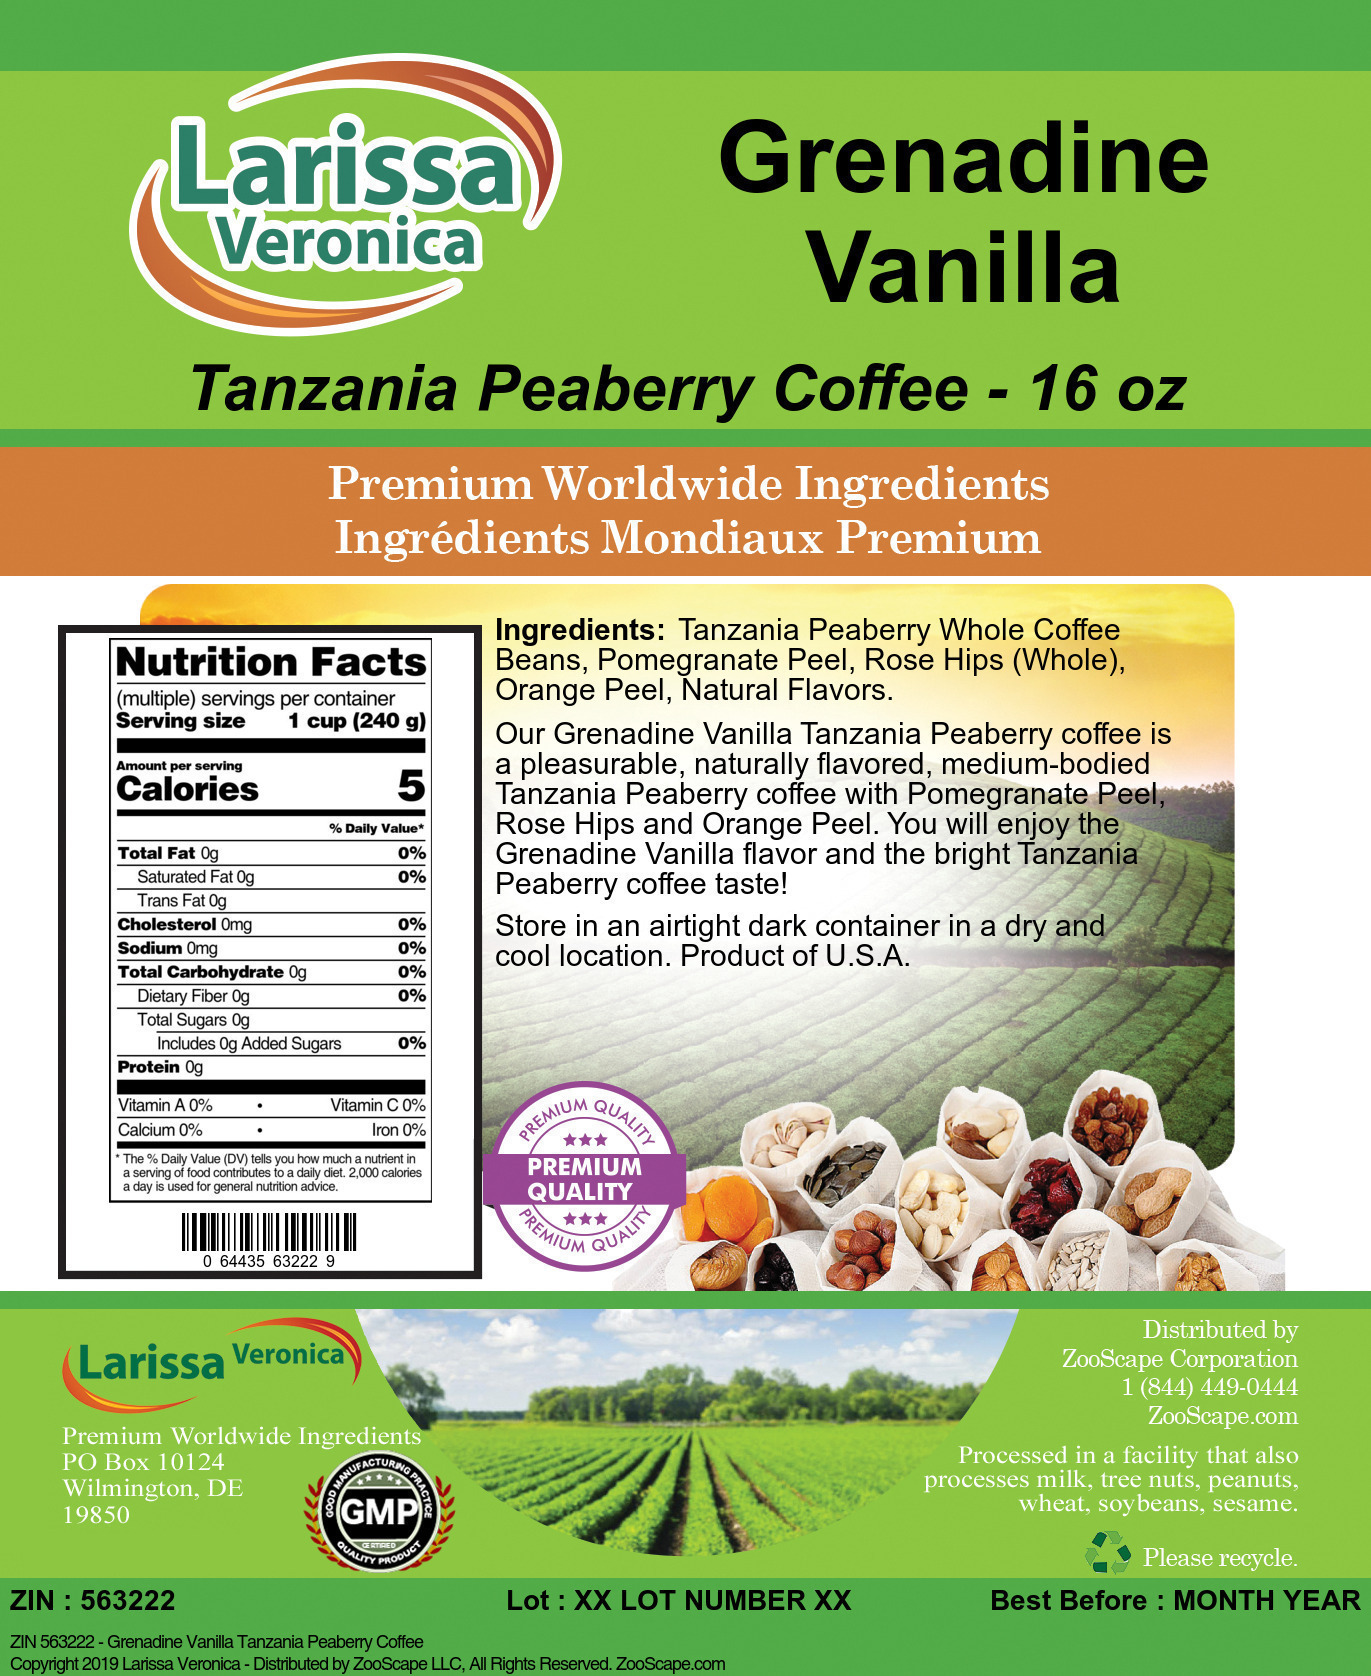 Grenadine Vanilla Tanzania Peaberry Coffee - Label